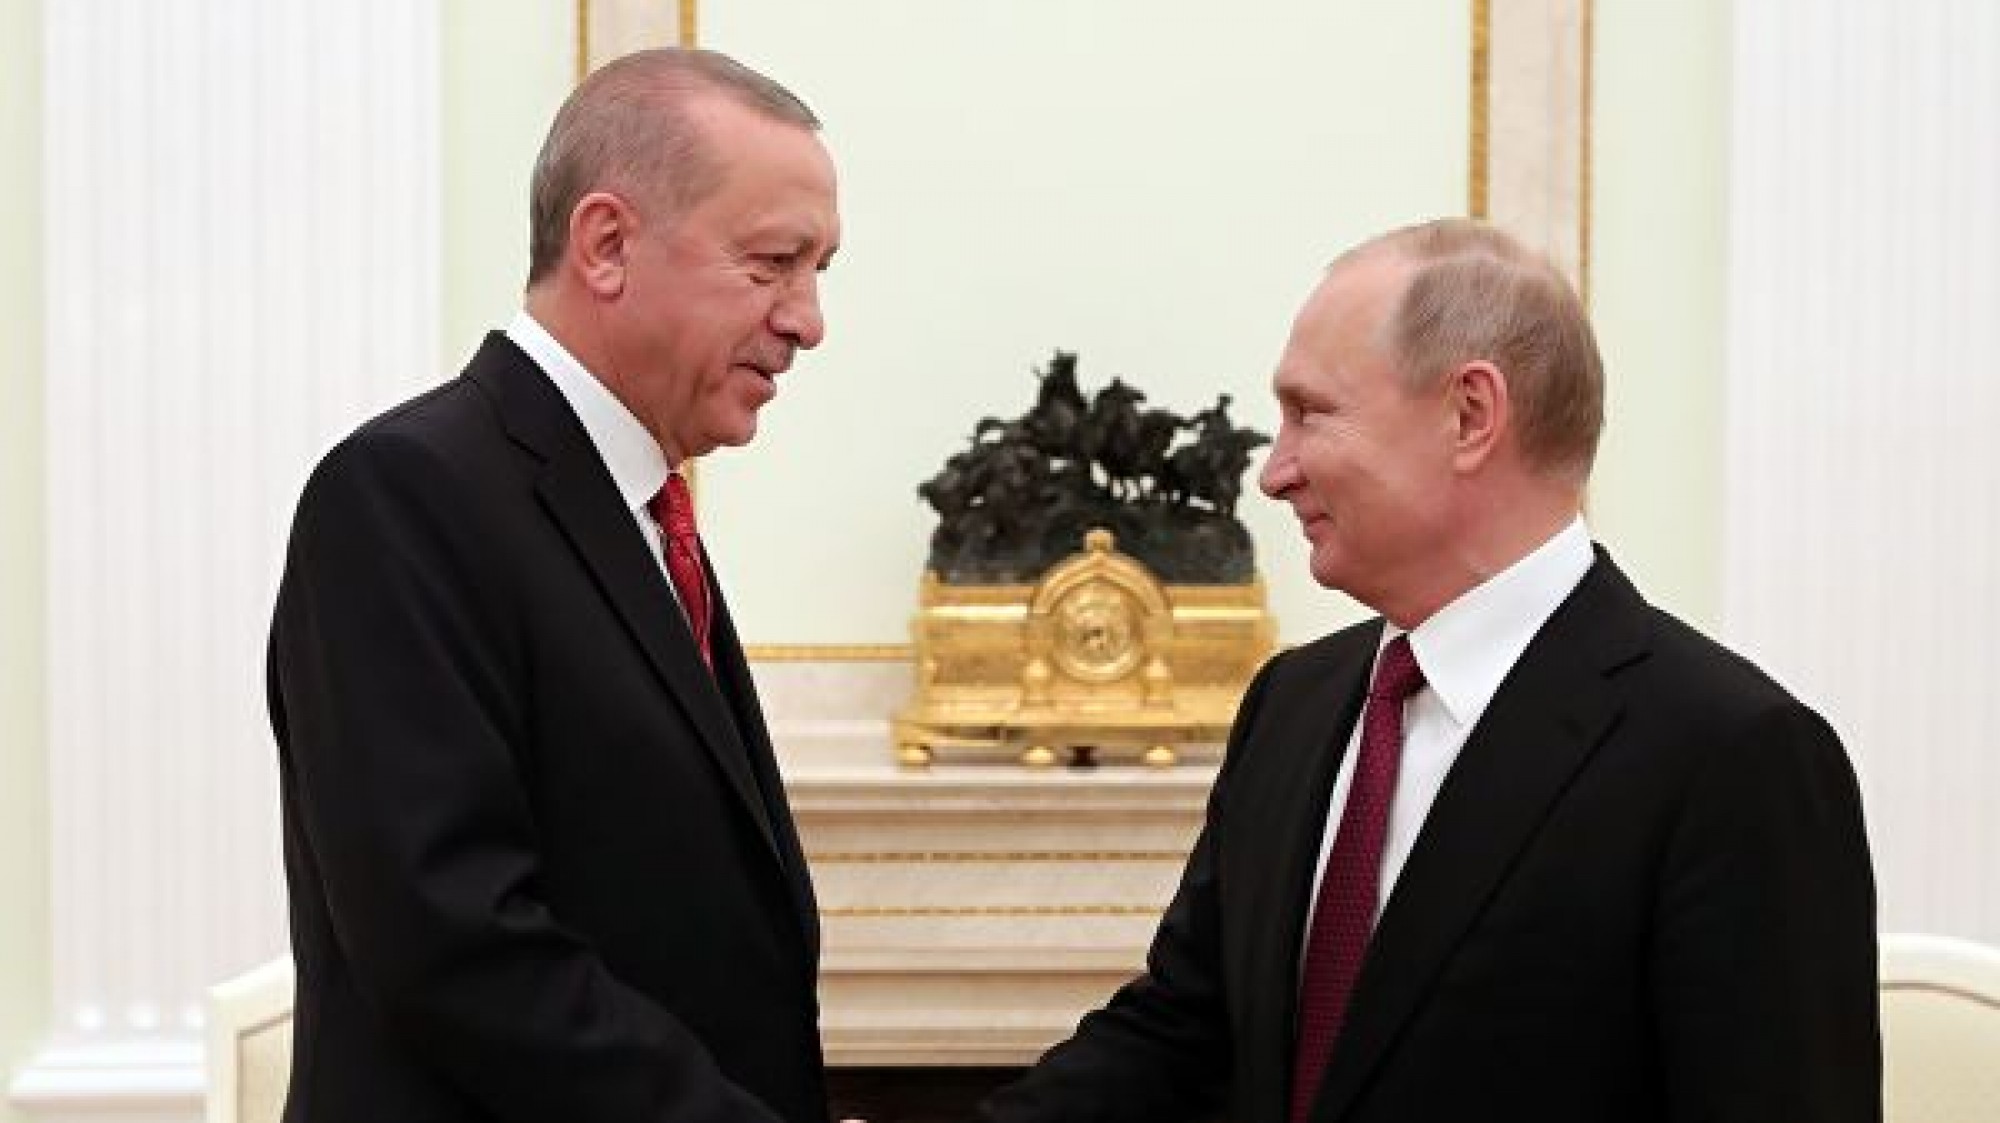 Путин и Эрдоган встретились в Москве